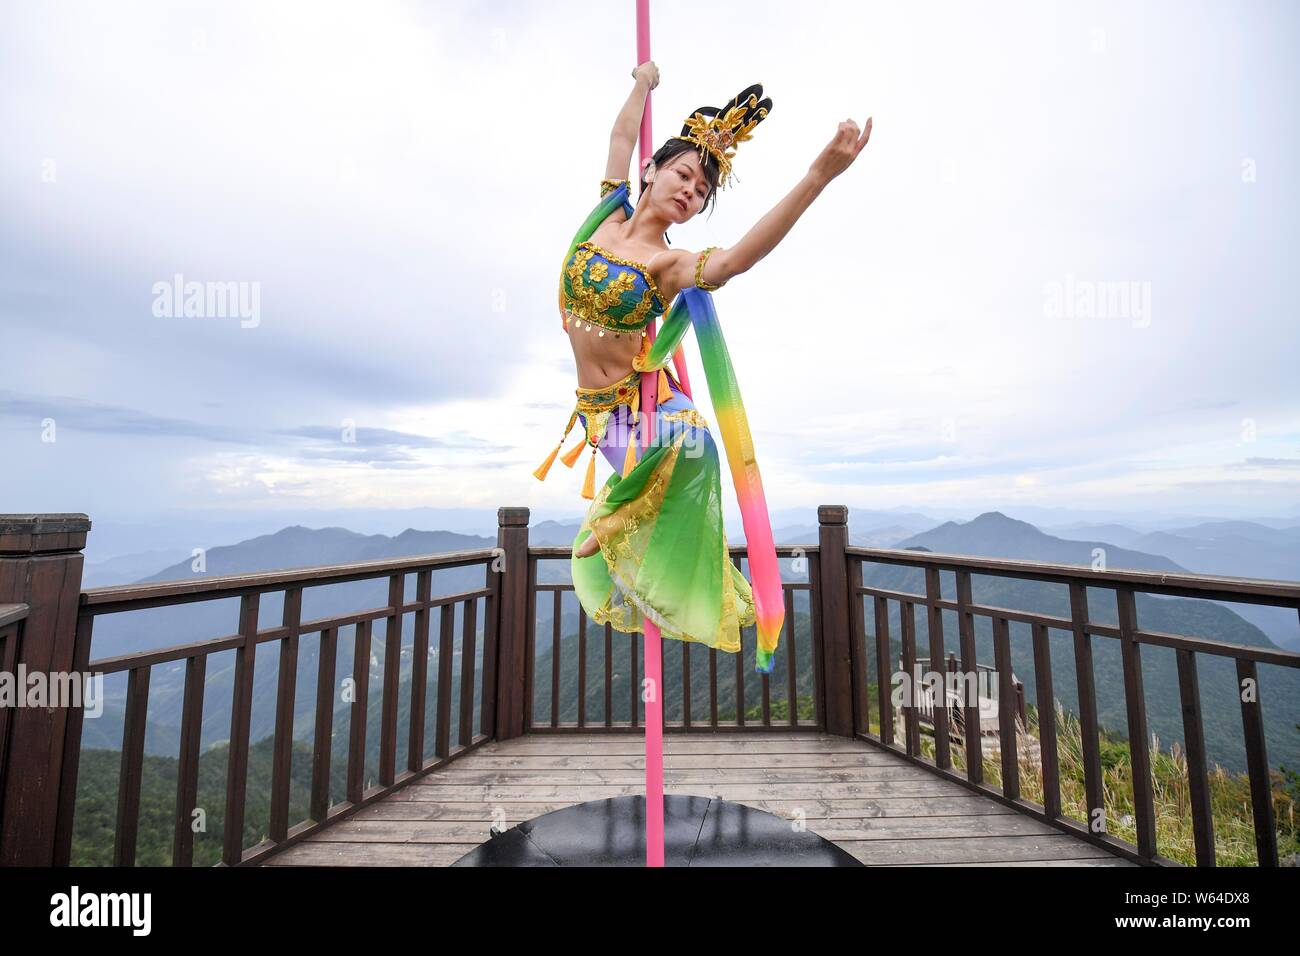 Touristen beobachten Chinesischen Enthusiasten in traditionellen Kostümen mit der Form der chinesischen Göttin des Mondes gekleidet Chang'e die Pole Dance sk Stockfoto